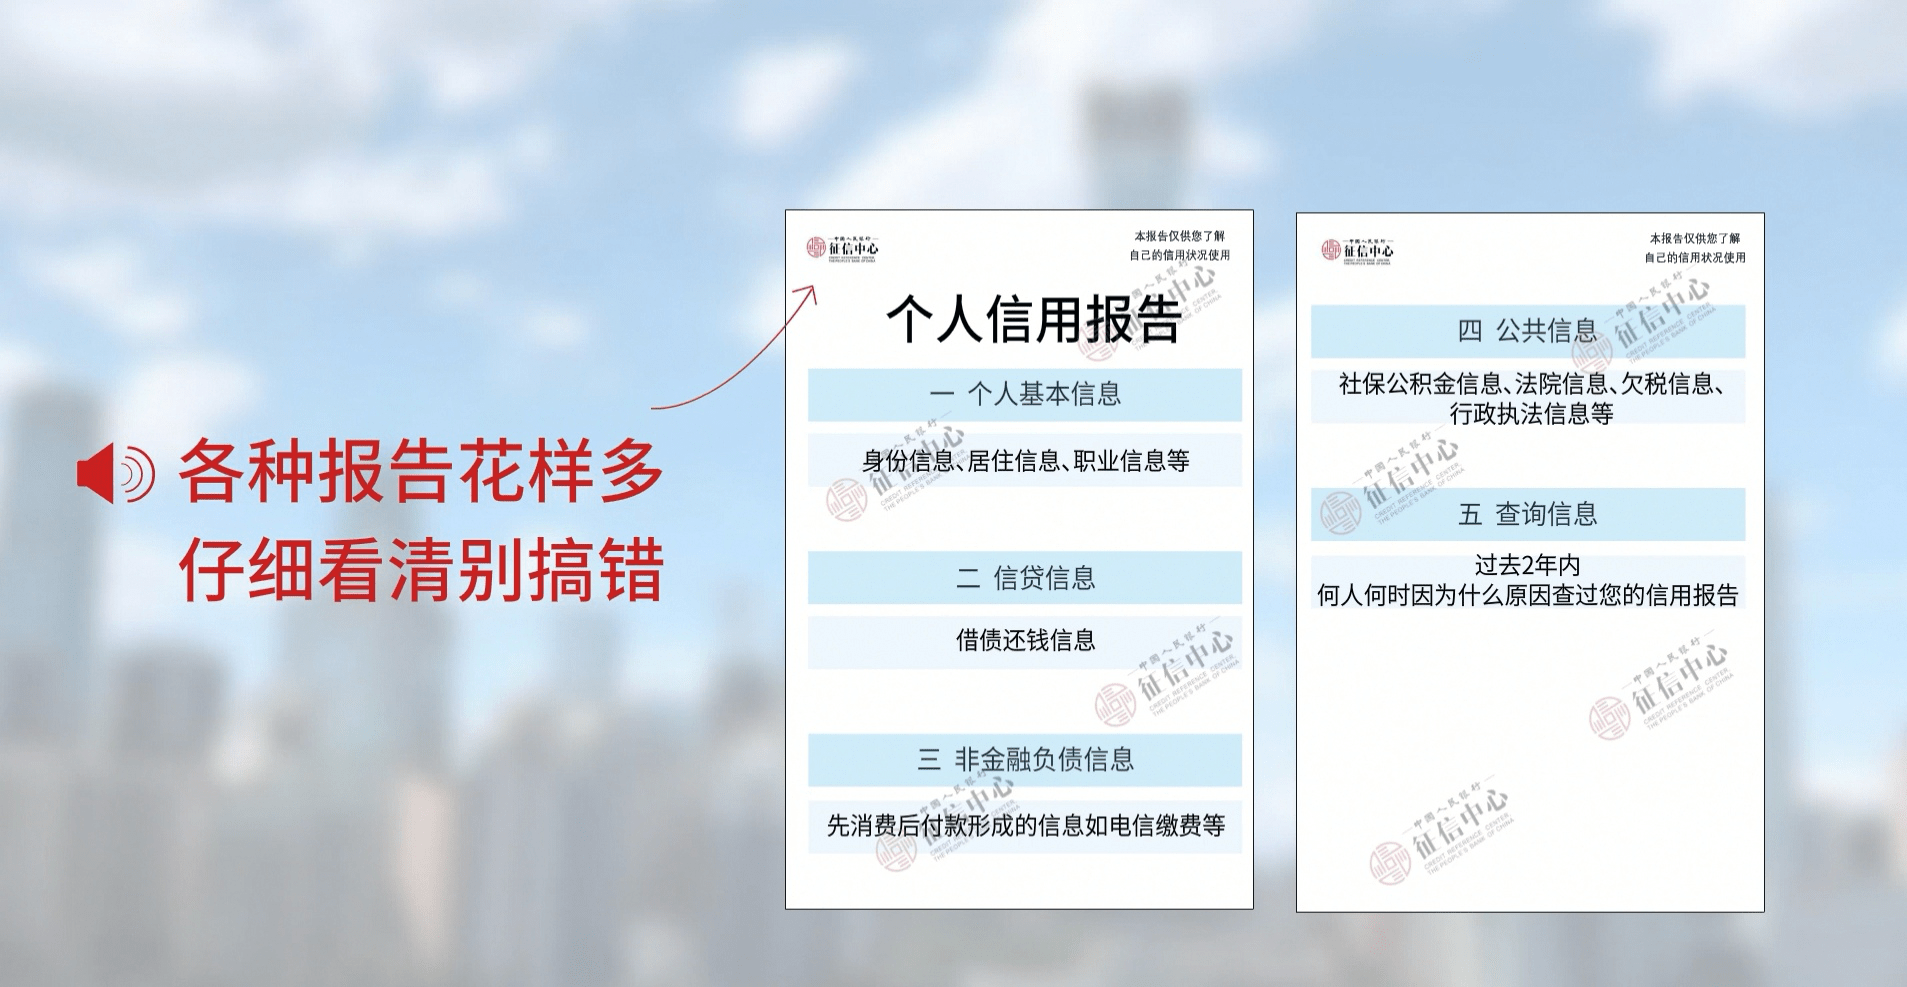 中信银行北京分行制作并发布 征信为民 信用北京查 微视频